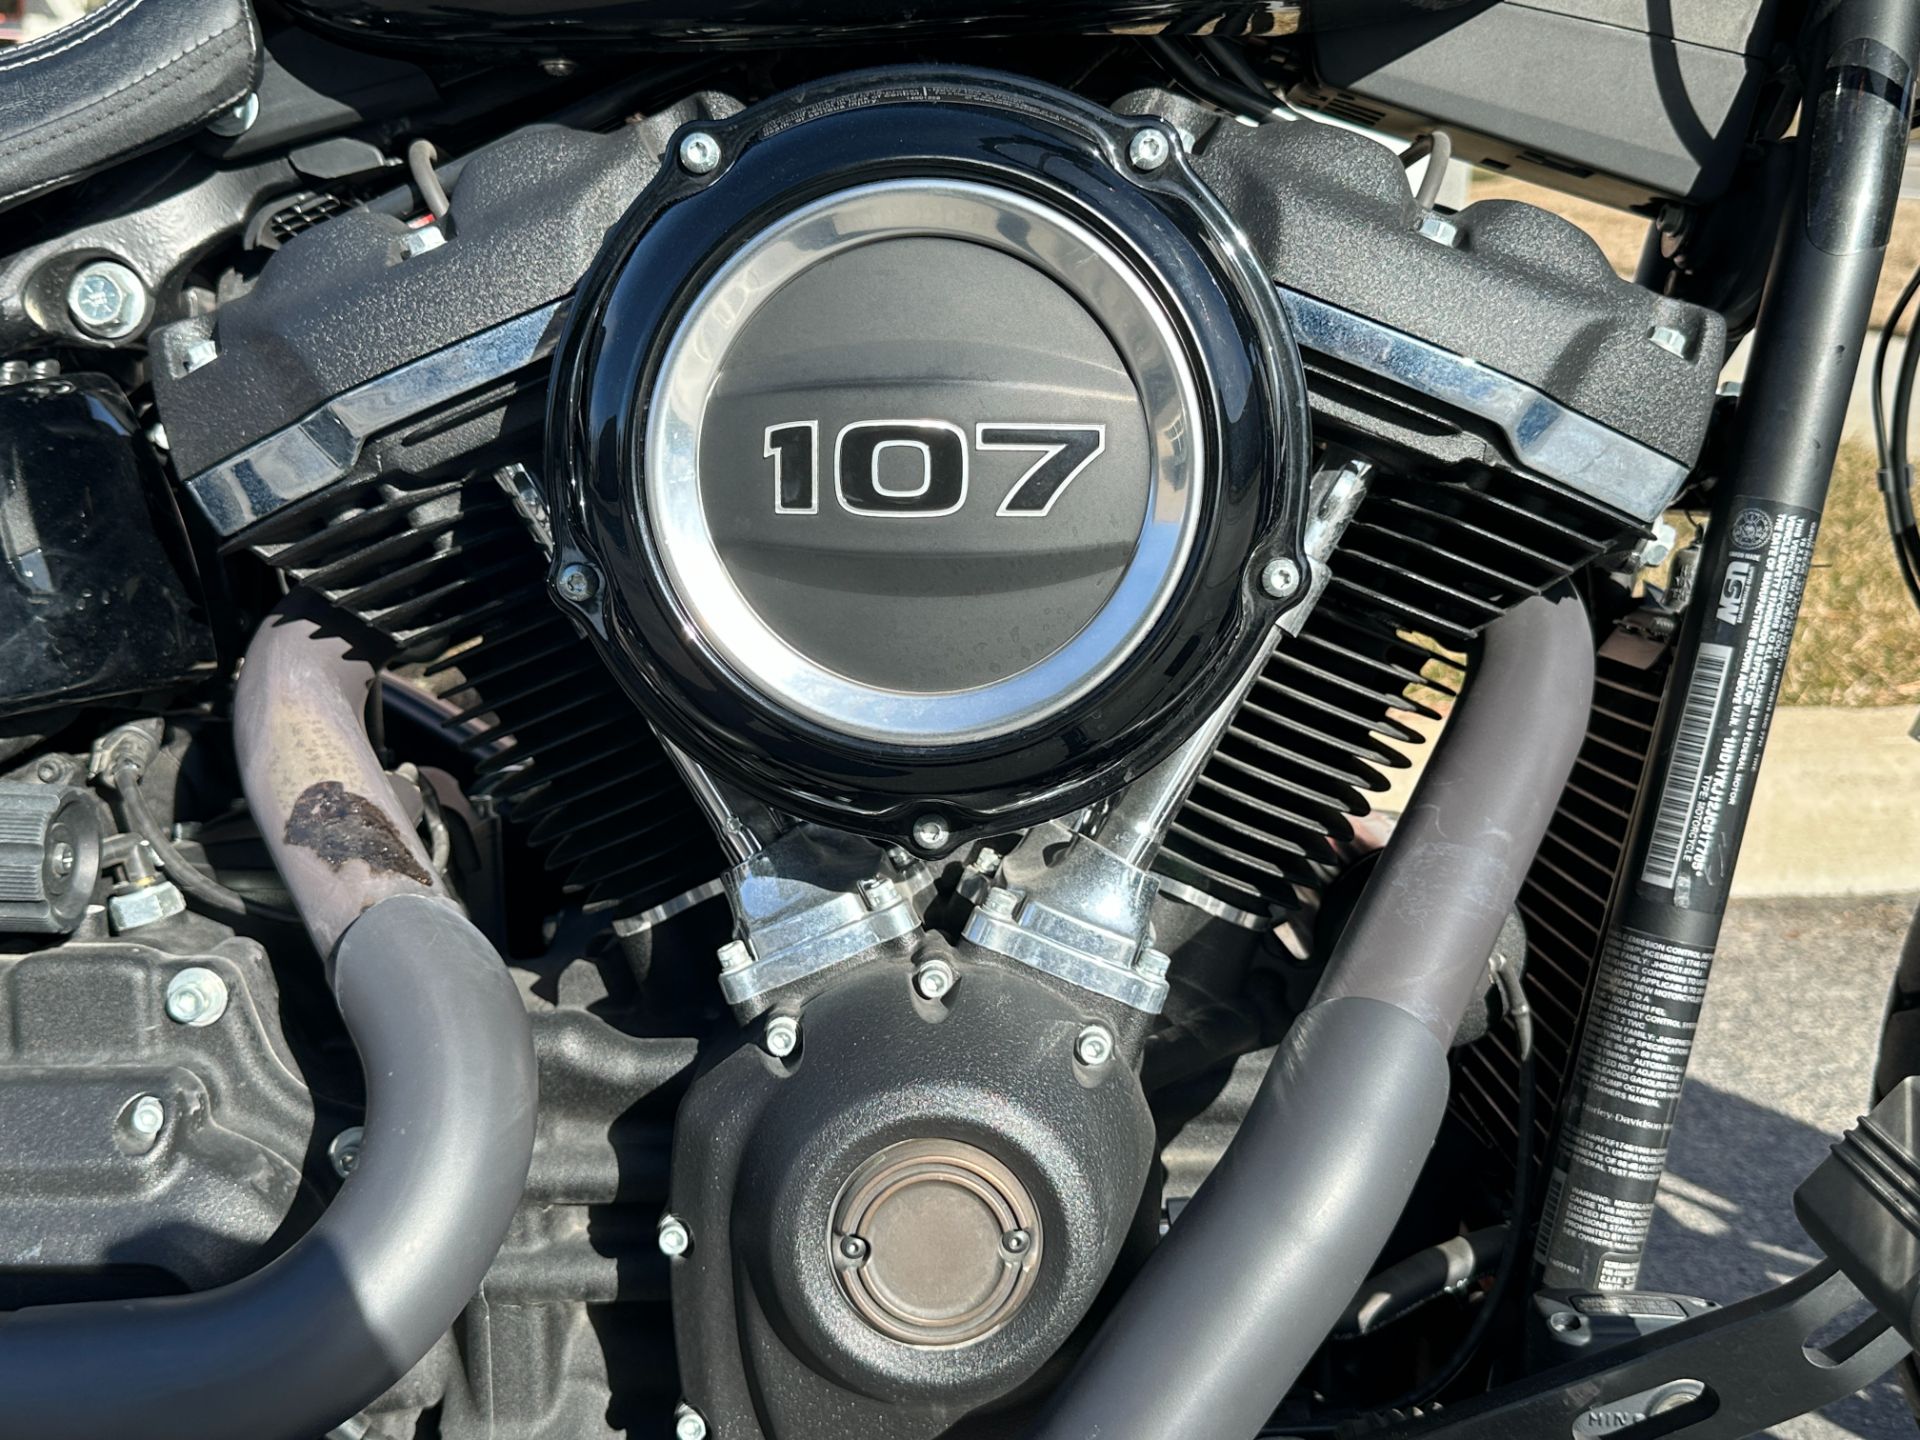 2018 Harley-Davidson Fat Bob® 107 in Sandy, Utah - Photo 4